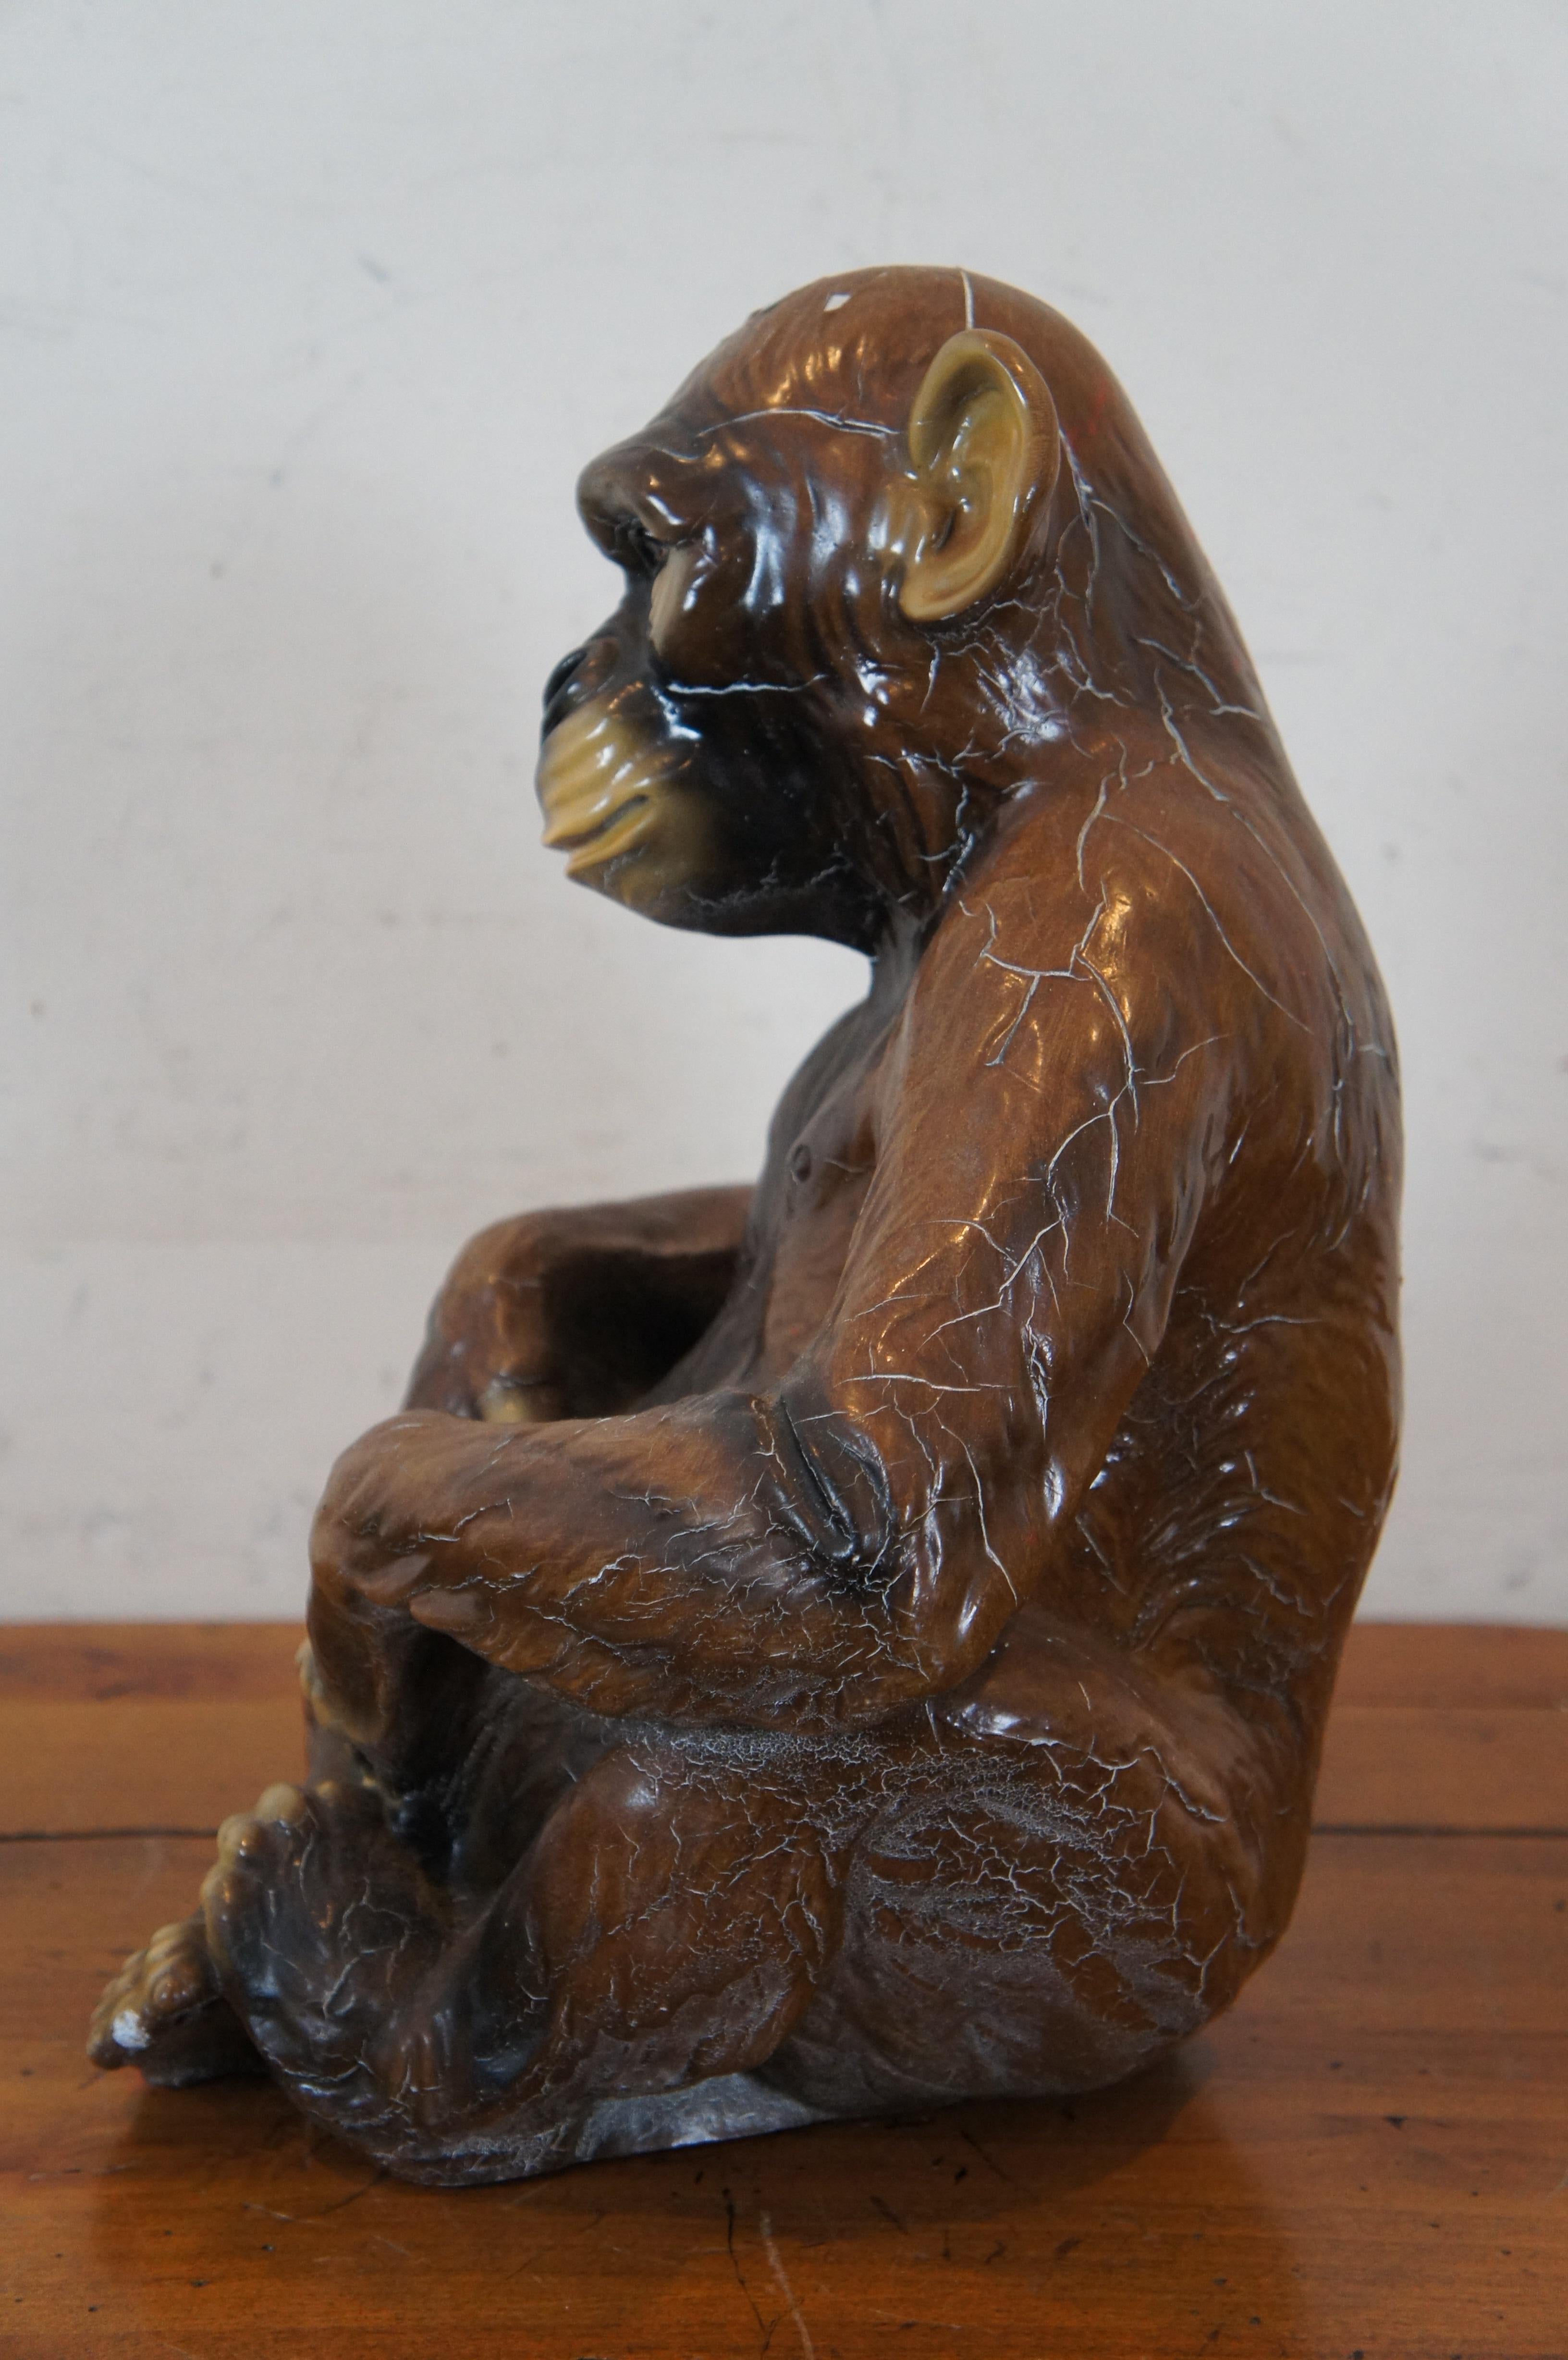 Seltene Marwal Ind Inc. sitzende Chalkware-Affen-Chimp-Ape-Skulptur Statue, 13